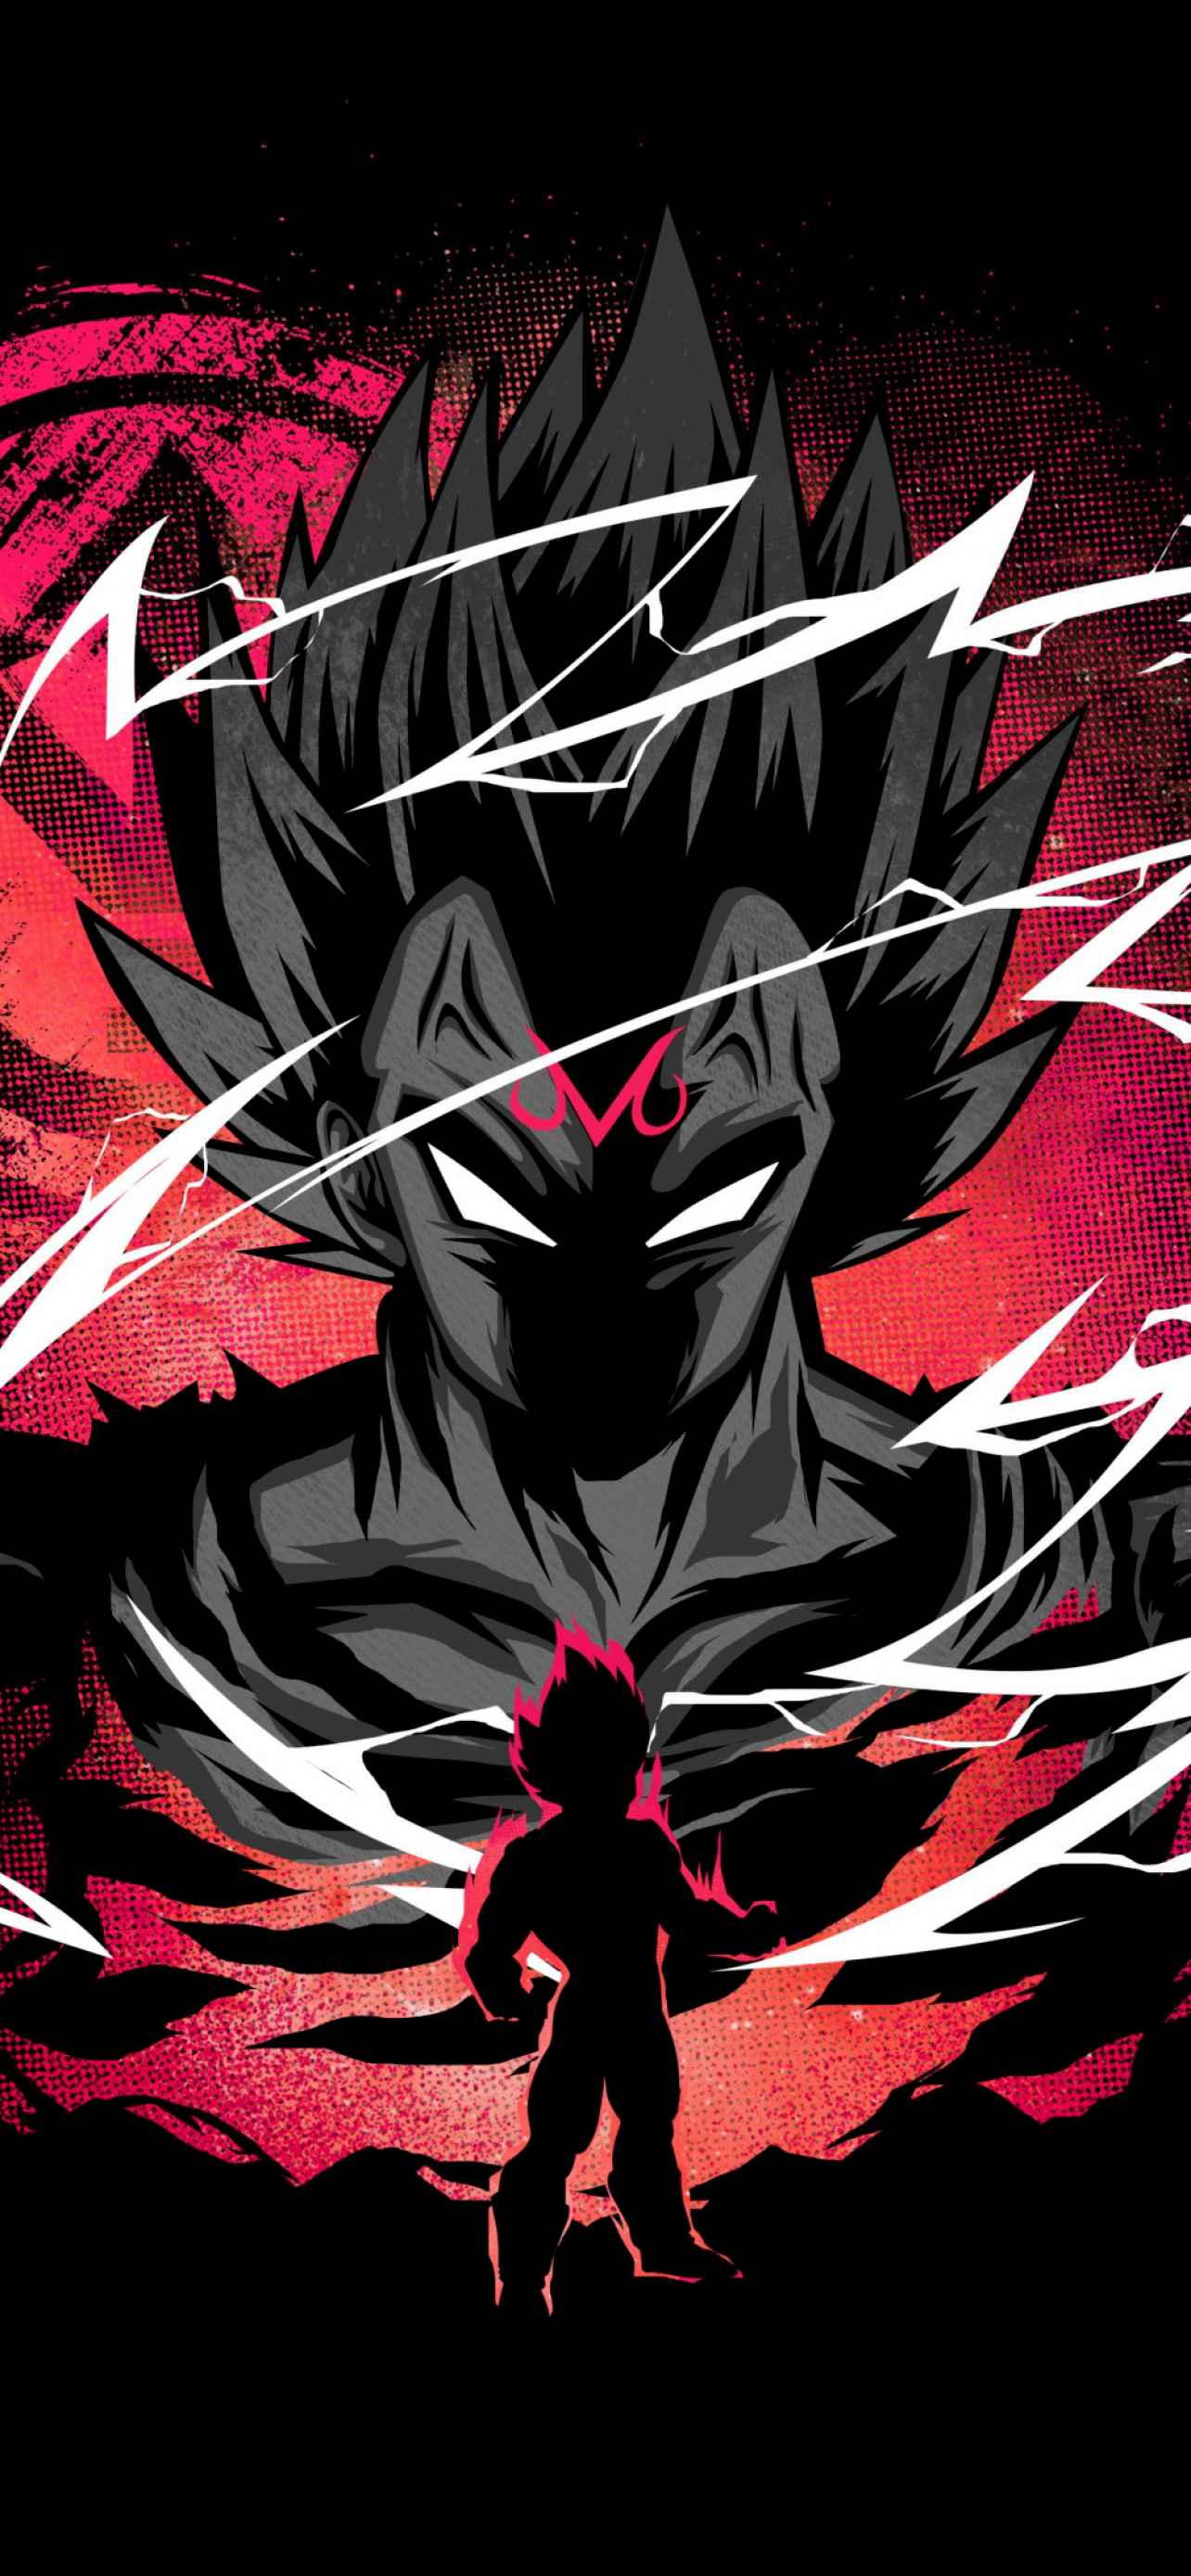 Vegeta Wallpaper 4K, Dragon Ball Super, Black background, Anime